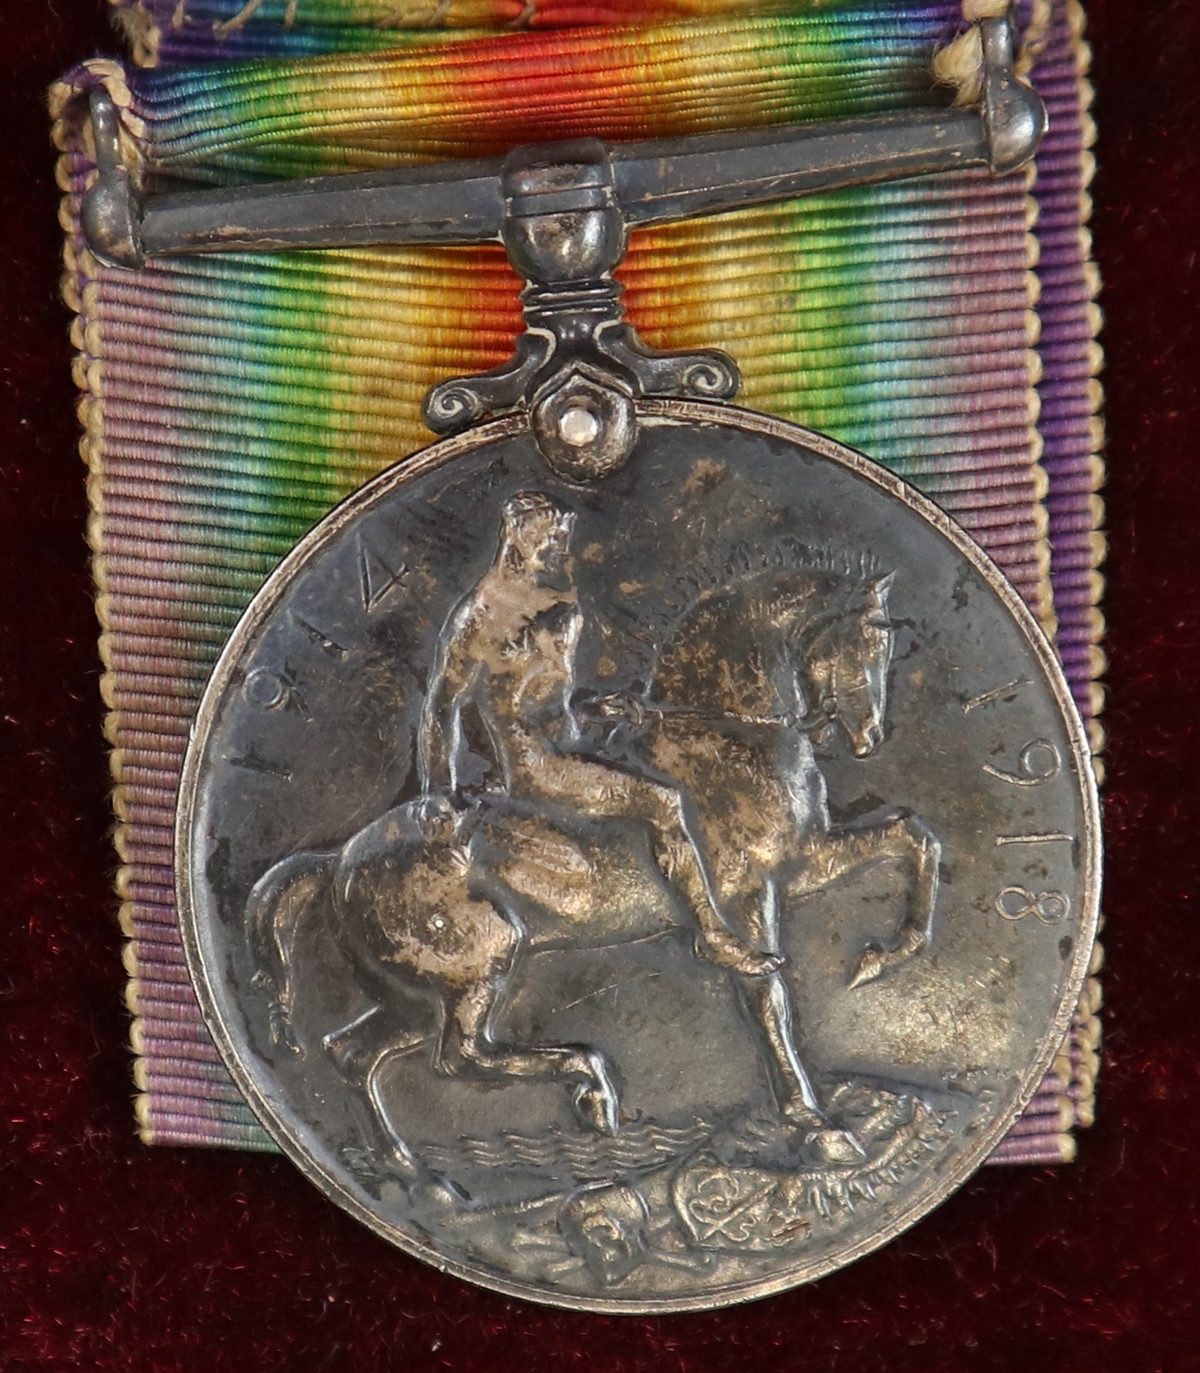 George V cased medal - 141171 J H Lawrence - Image 3 of 3